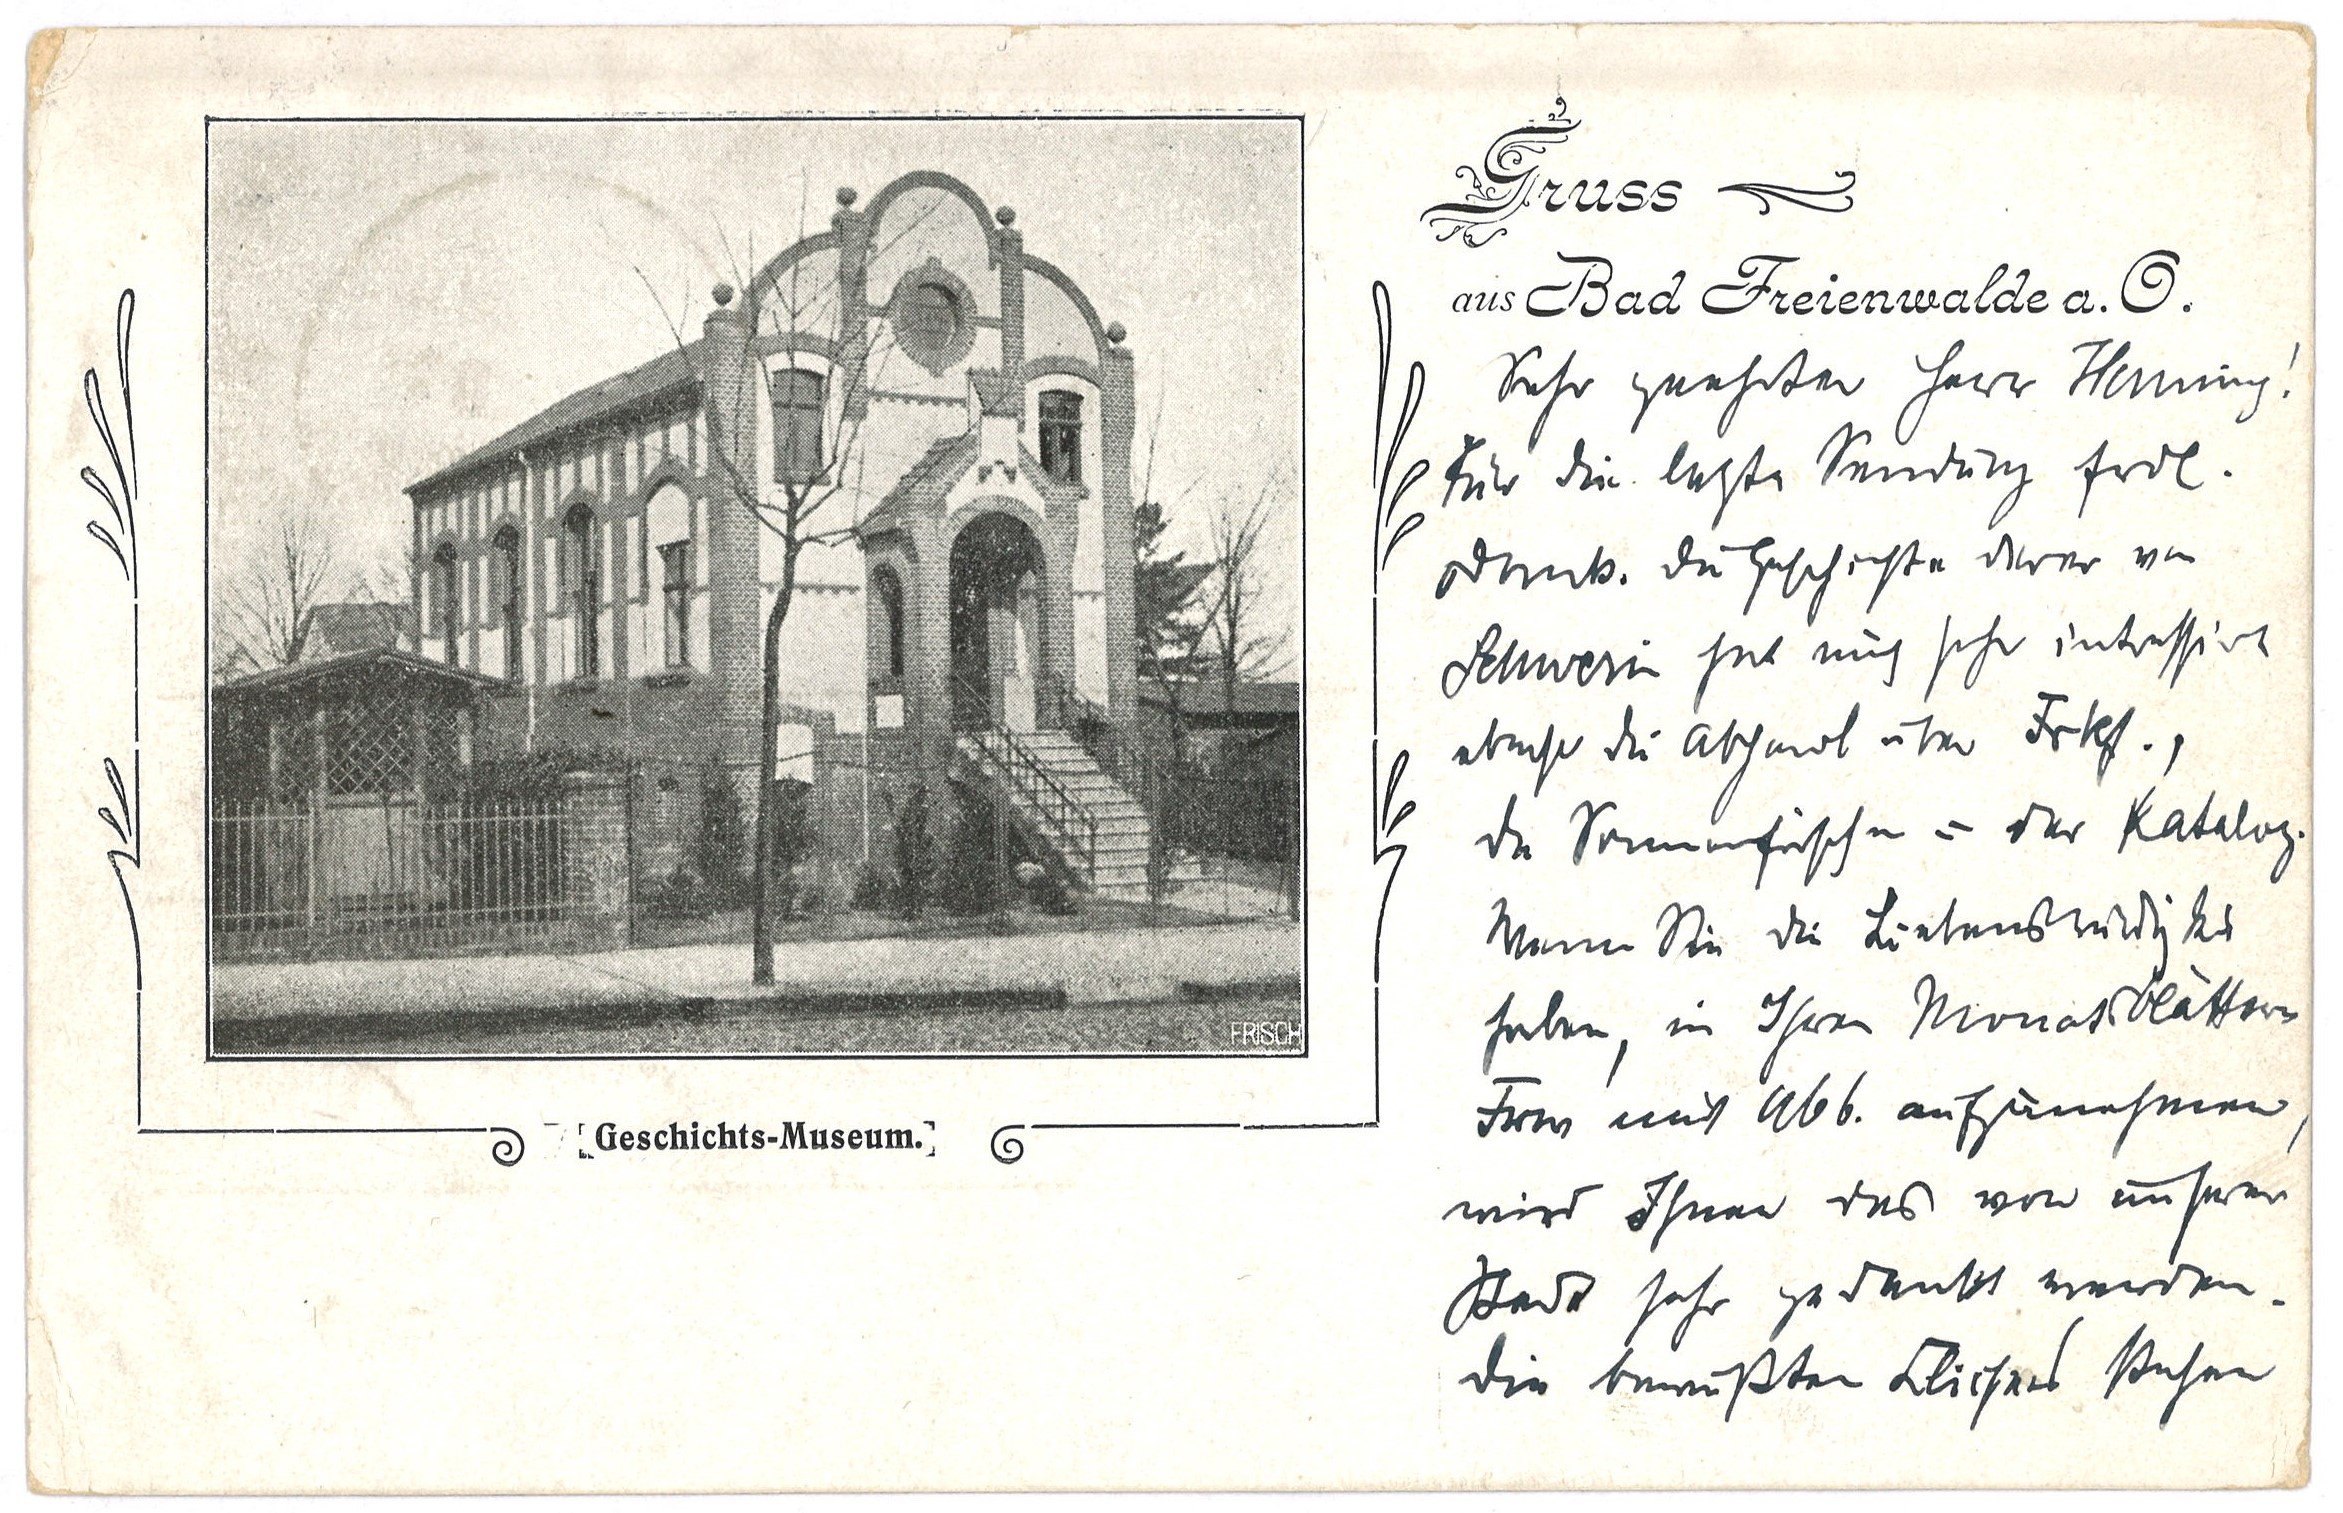 Postkarte Dr. Gustav Fiddicke in Bad Freienwalde (Oder) an Franz Henning in Berlin 1908 (Landesgeschichtliche Vereinigung für die Mark Brandenburg e.V., Archiv CC BY)